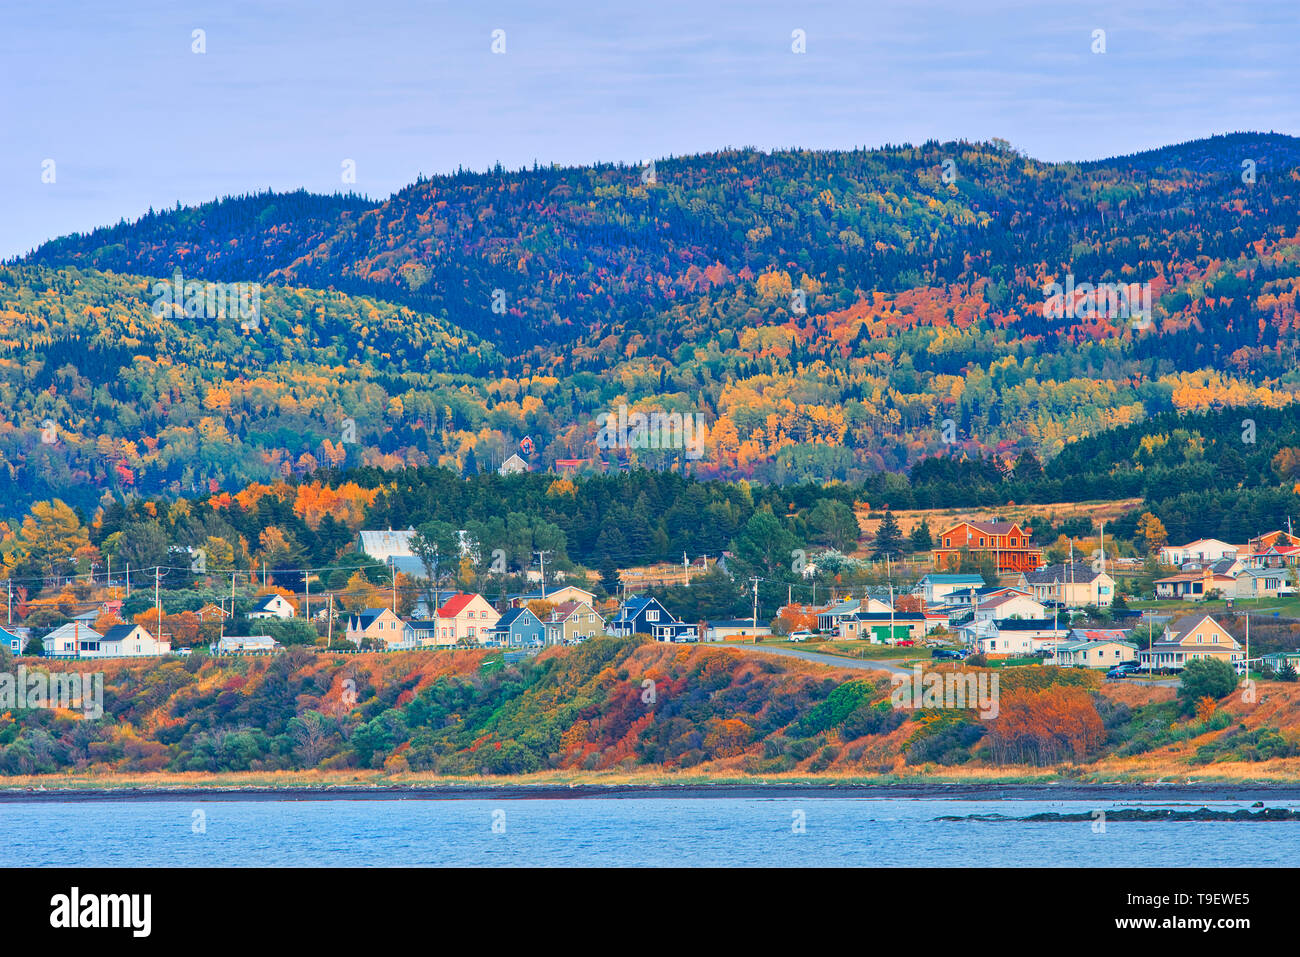 Village côtier et couleurs d'automne dans la forêt mixte de montagne Chic-Choc (Appalaches). Région de la forêt boréale. Sainte Anne des Monts Québec Canada Banque D'Images